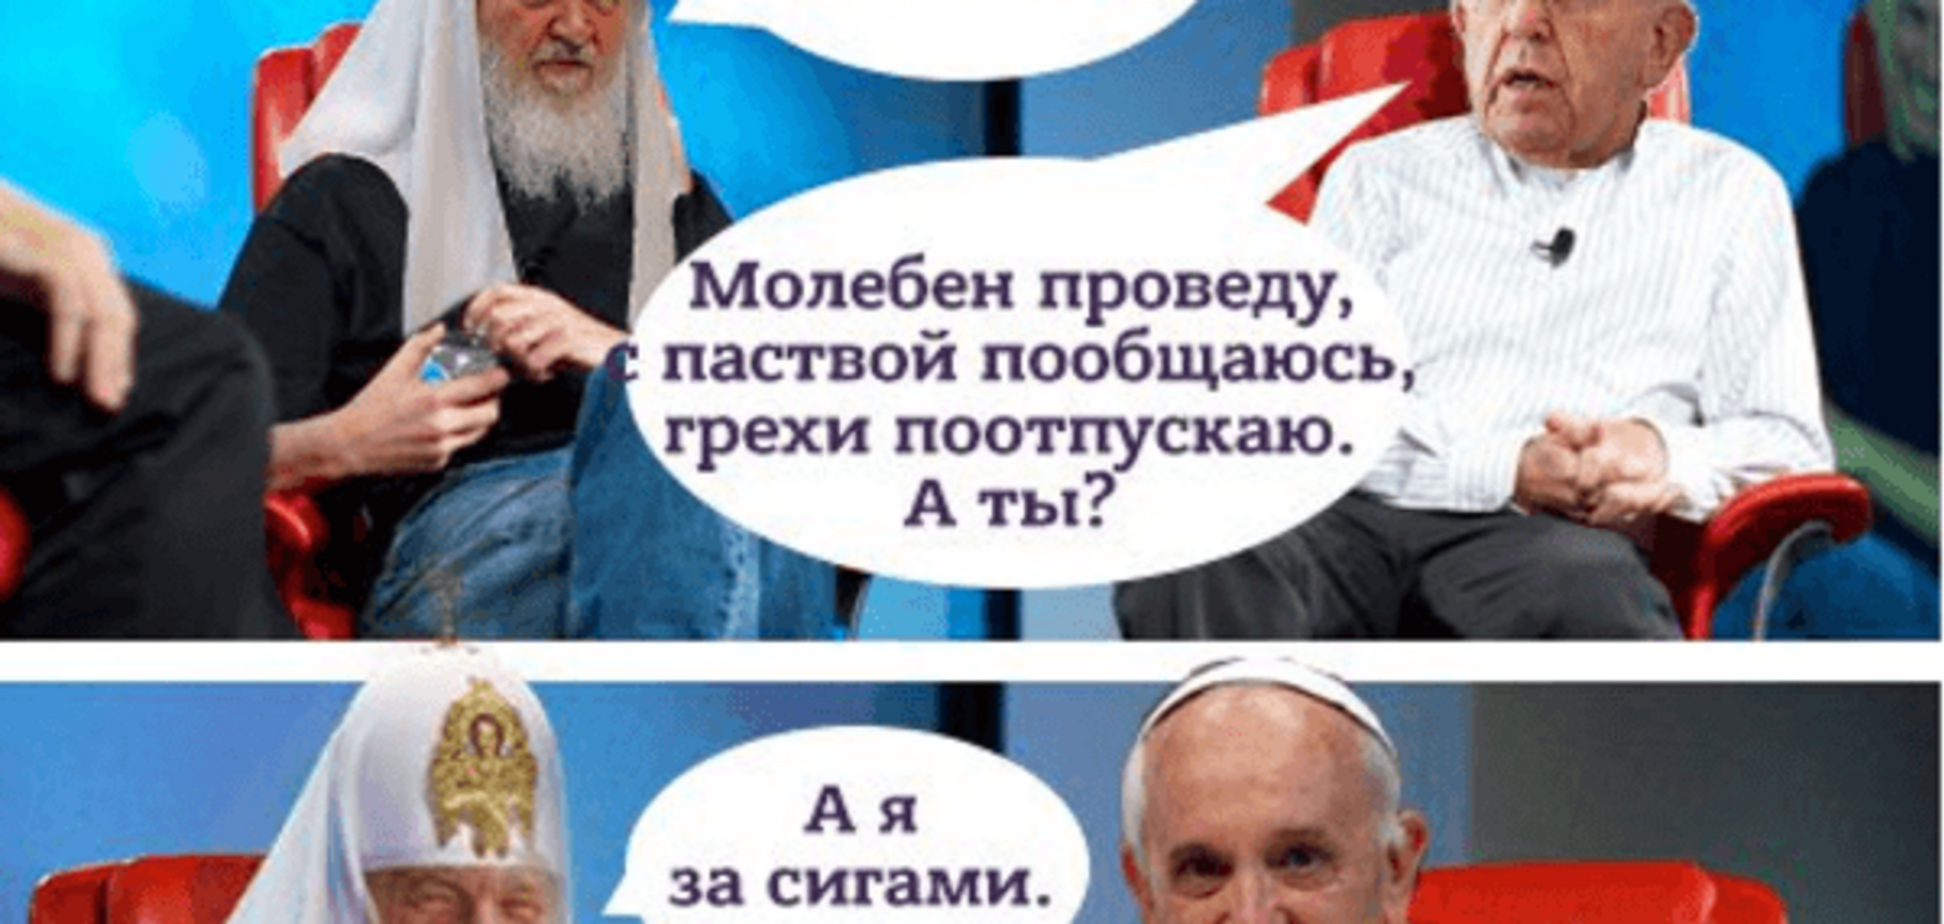 'А я за сигами': в сети посмеялись над патриархом Кириллом перед визитом к Папе